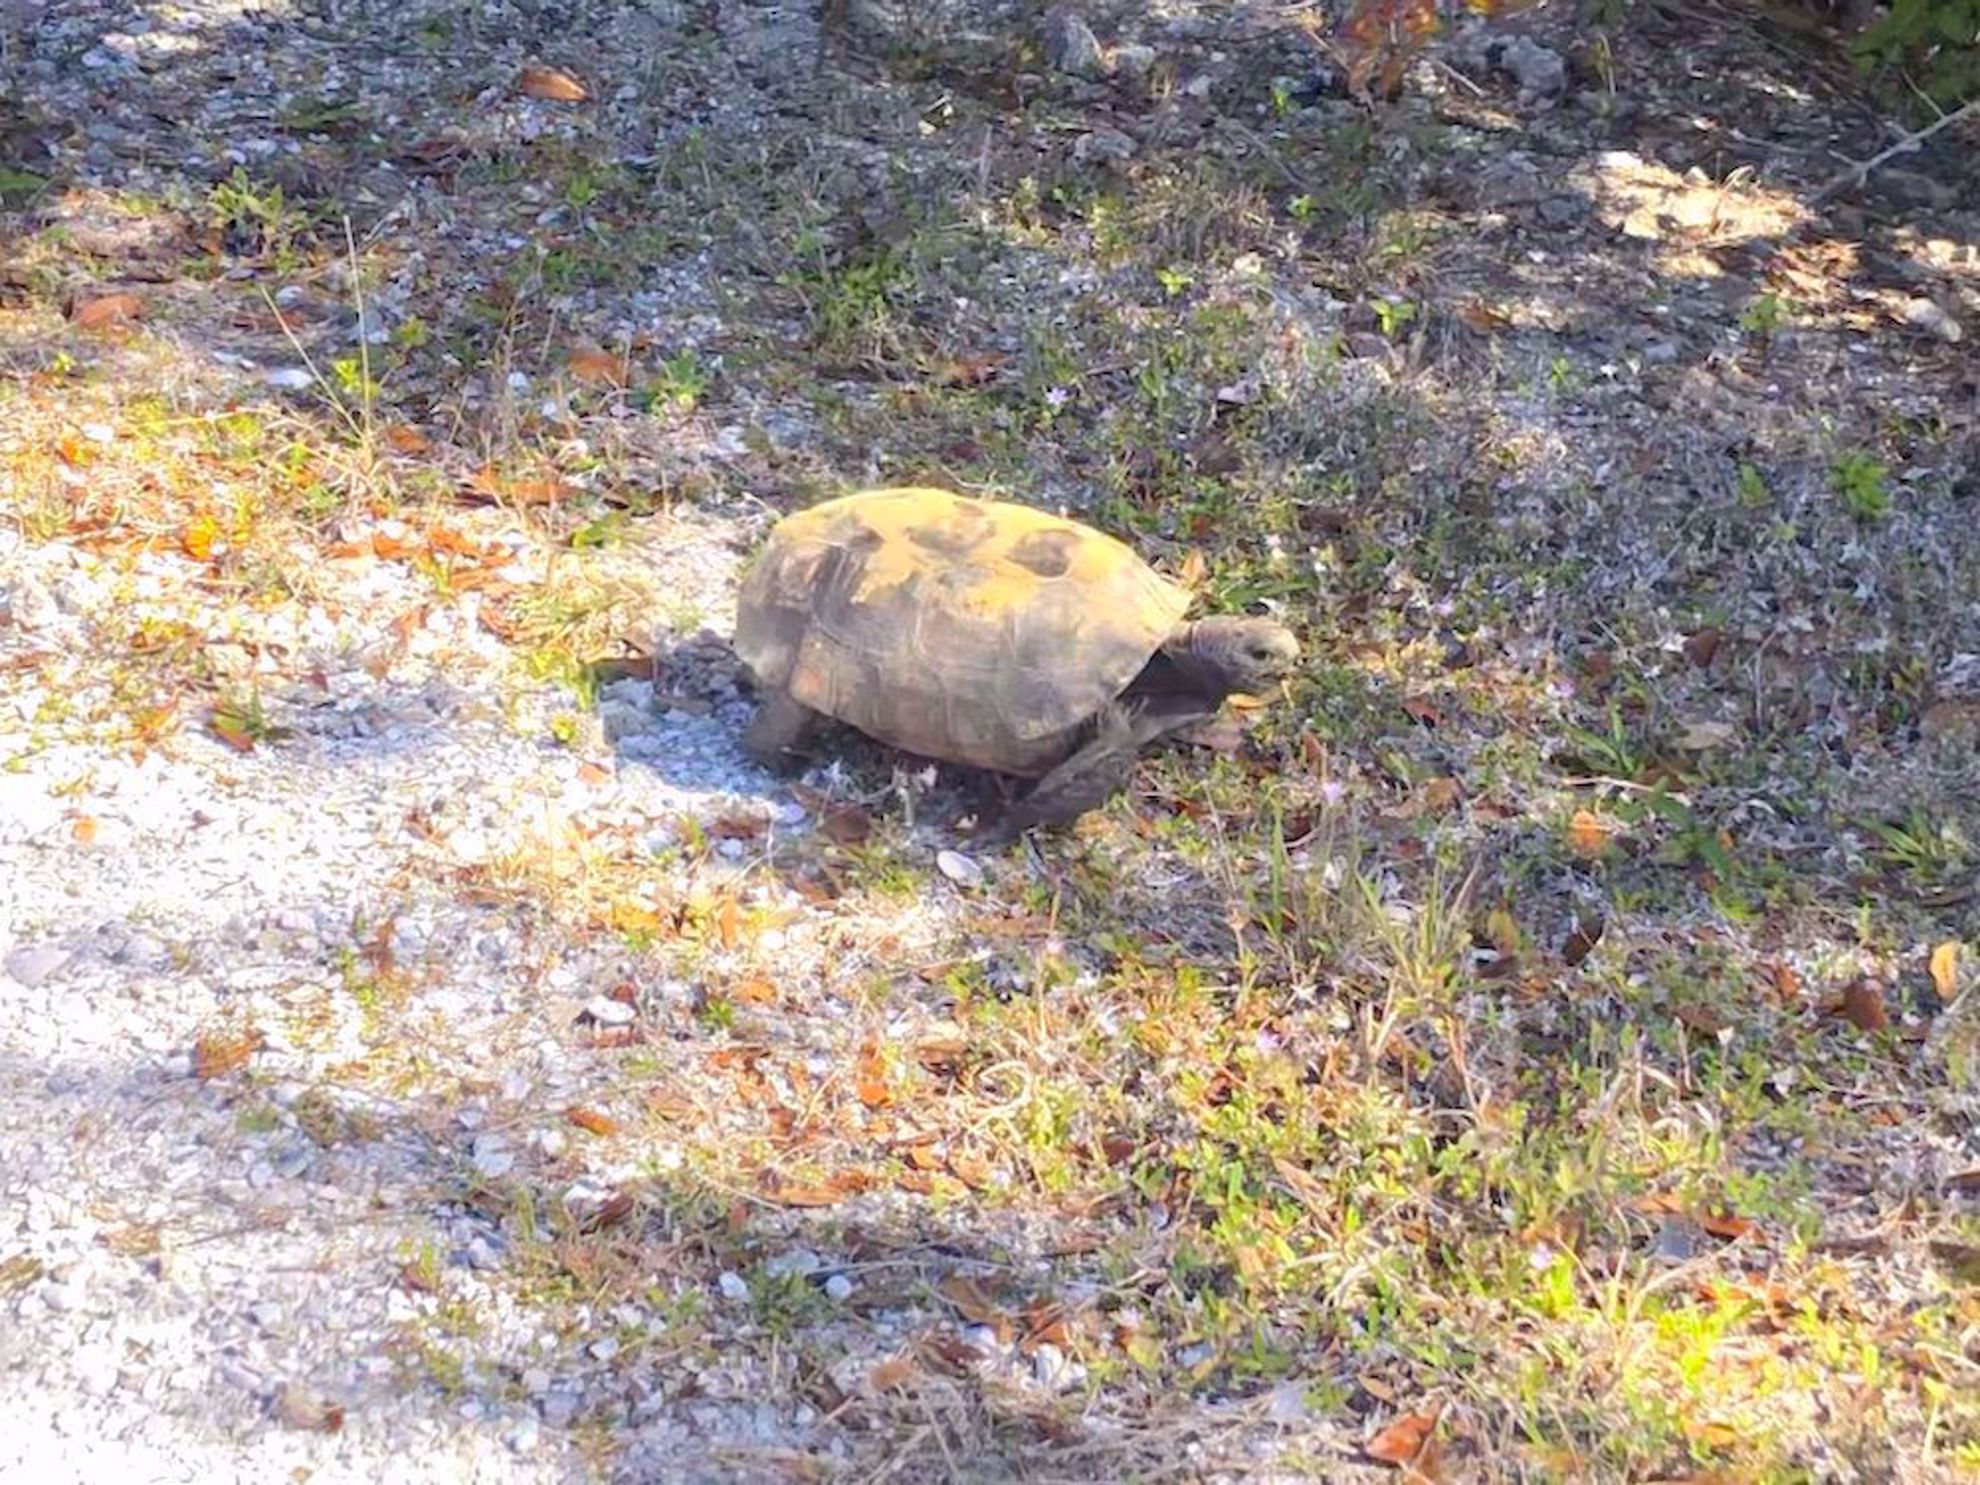 Endangered gopher tortoise along trail